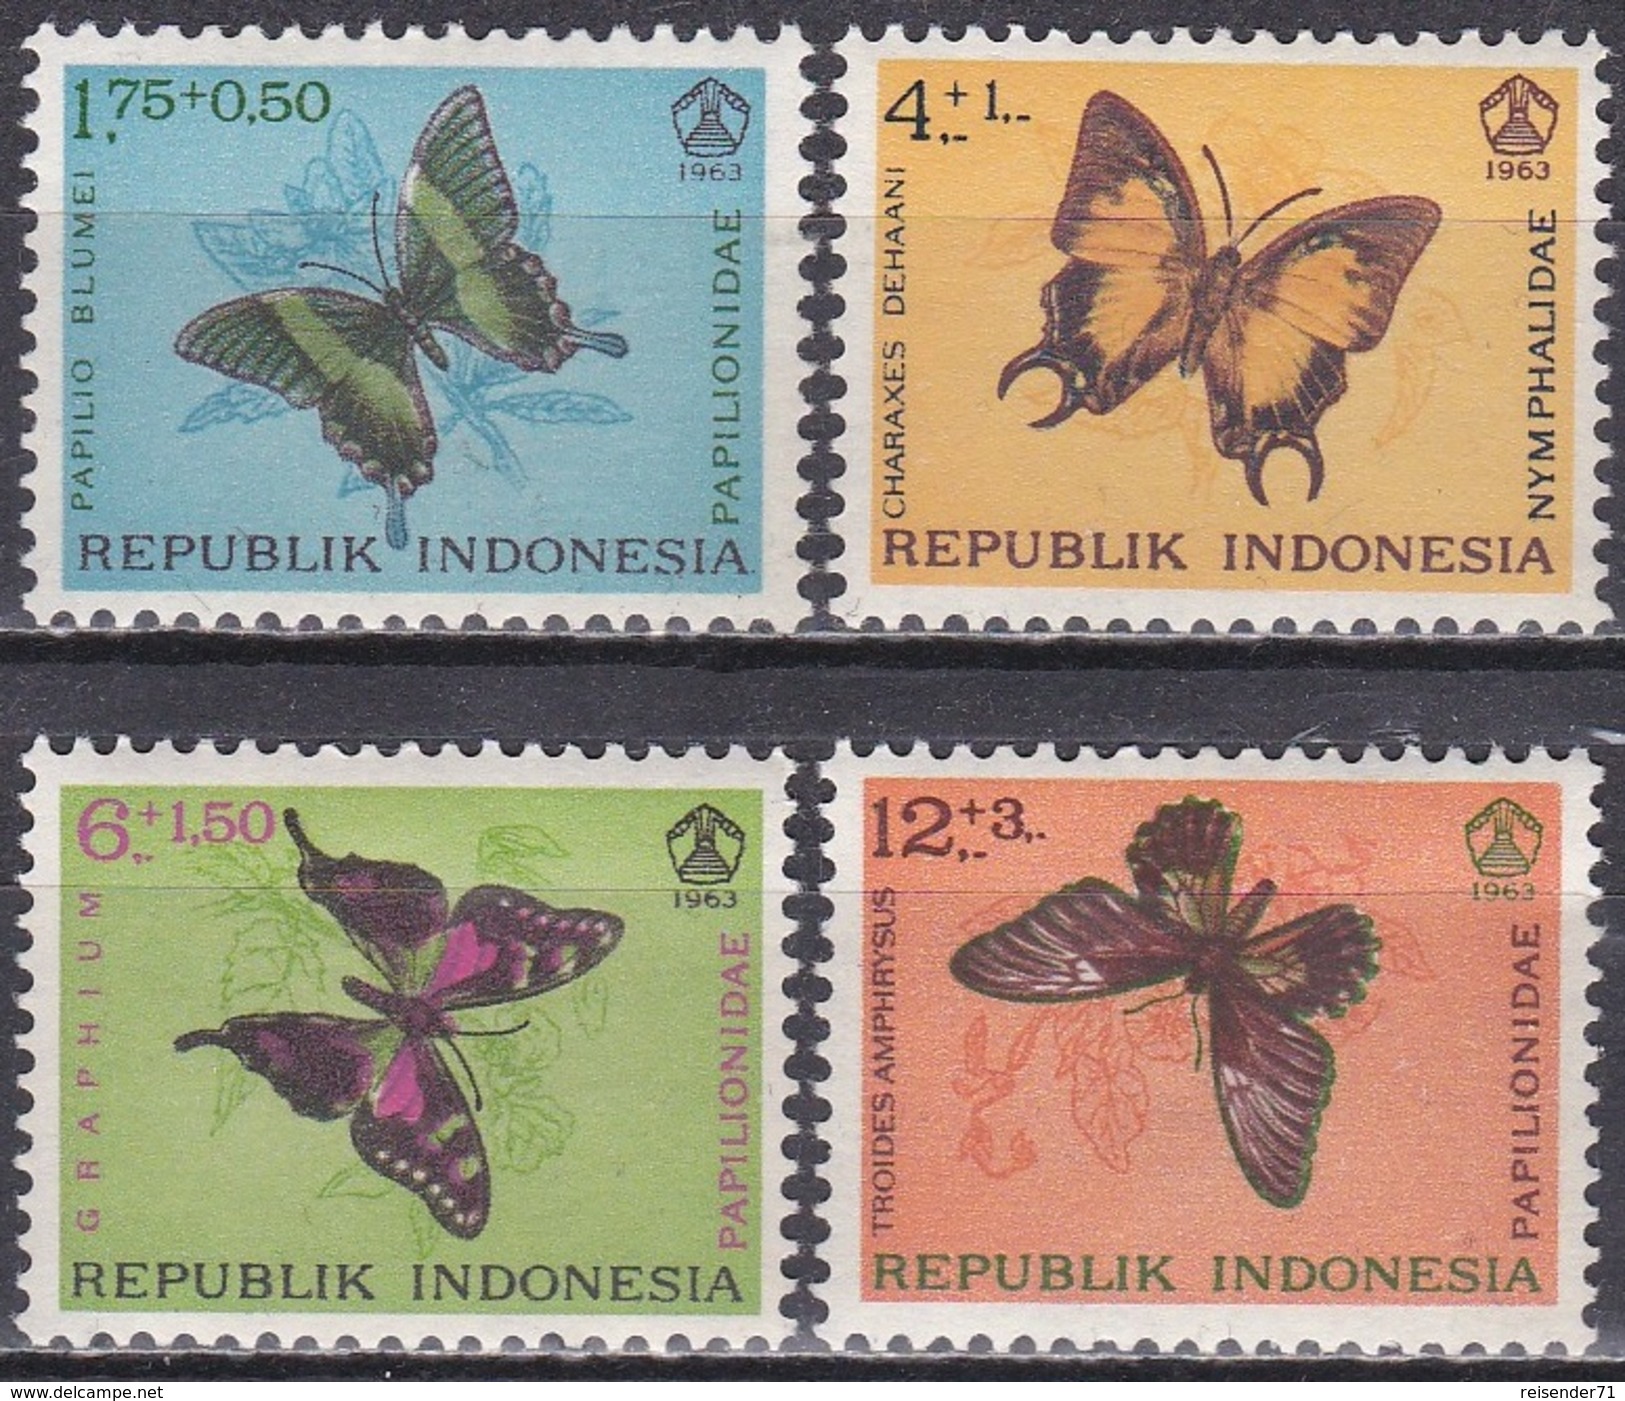 Indonesien Indonesia 1963 Tiere Fauna Animals Schmetterlinge Butterflies Insekten Insects, Mi. 421-4 ** - Indonesien